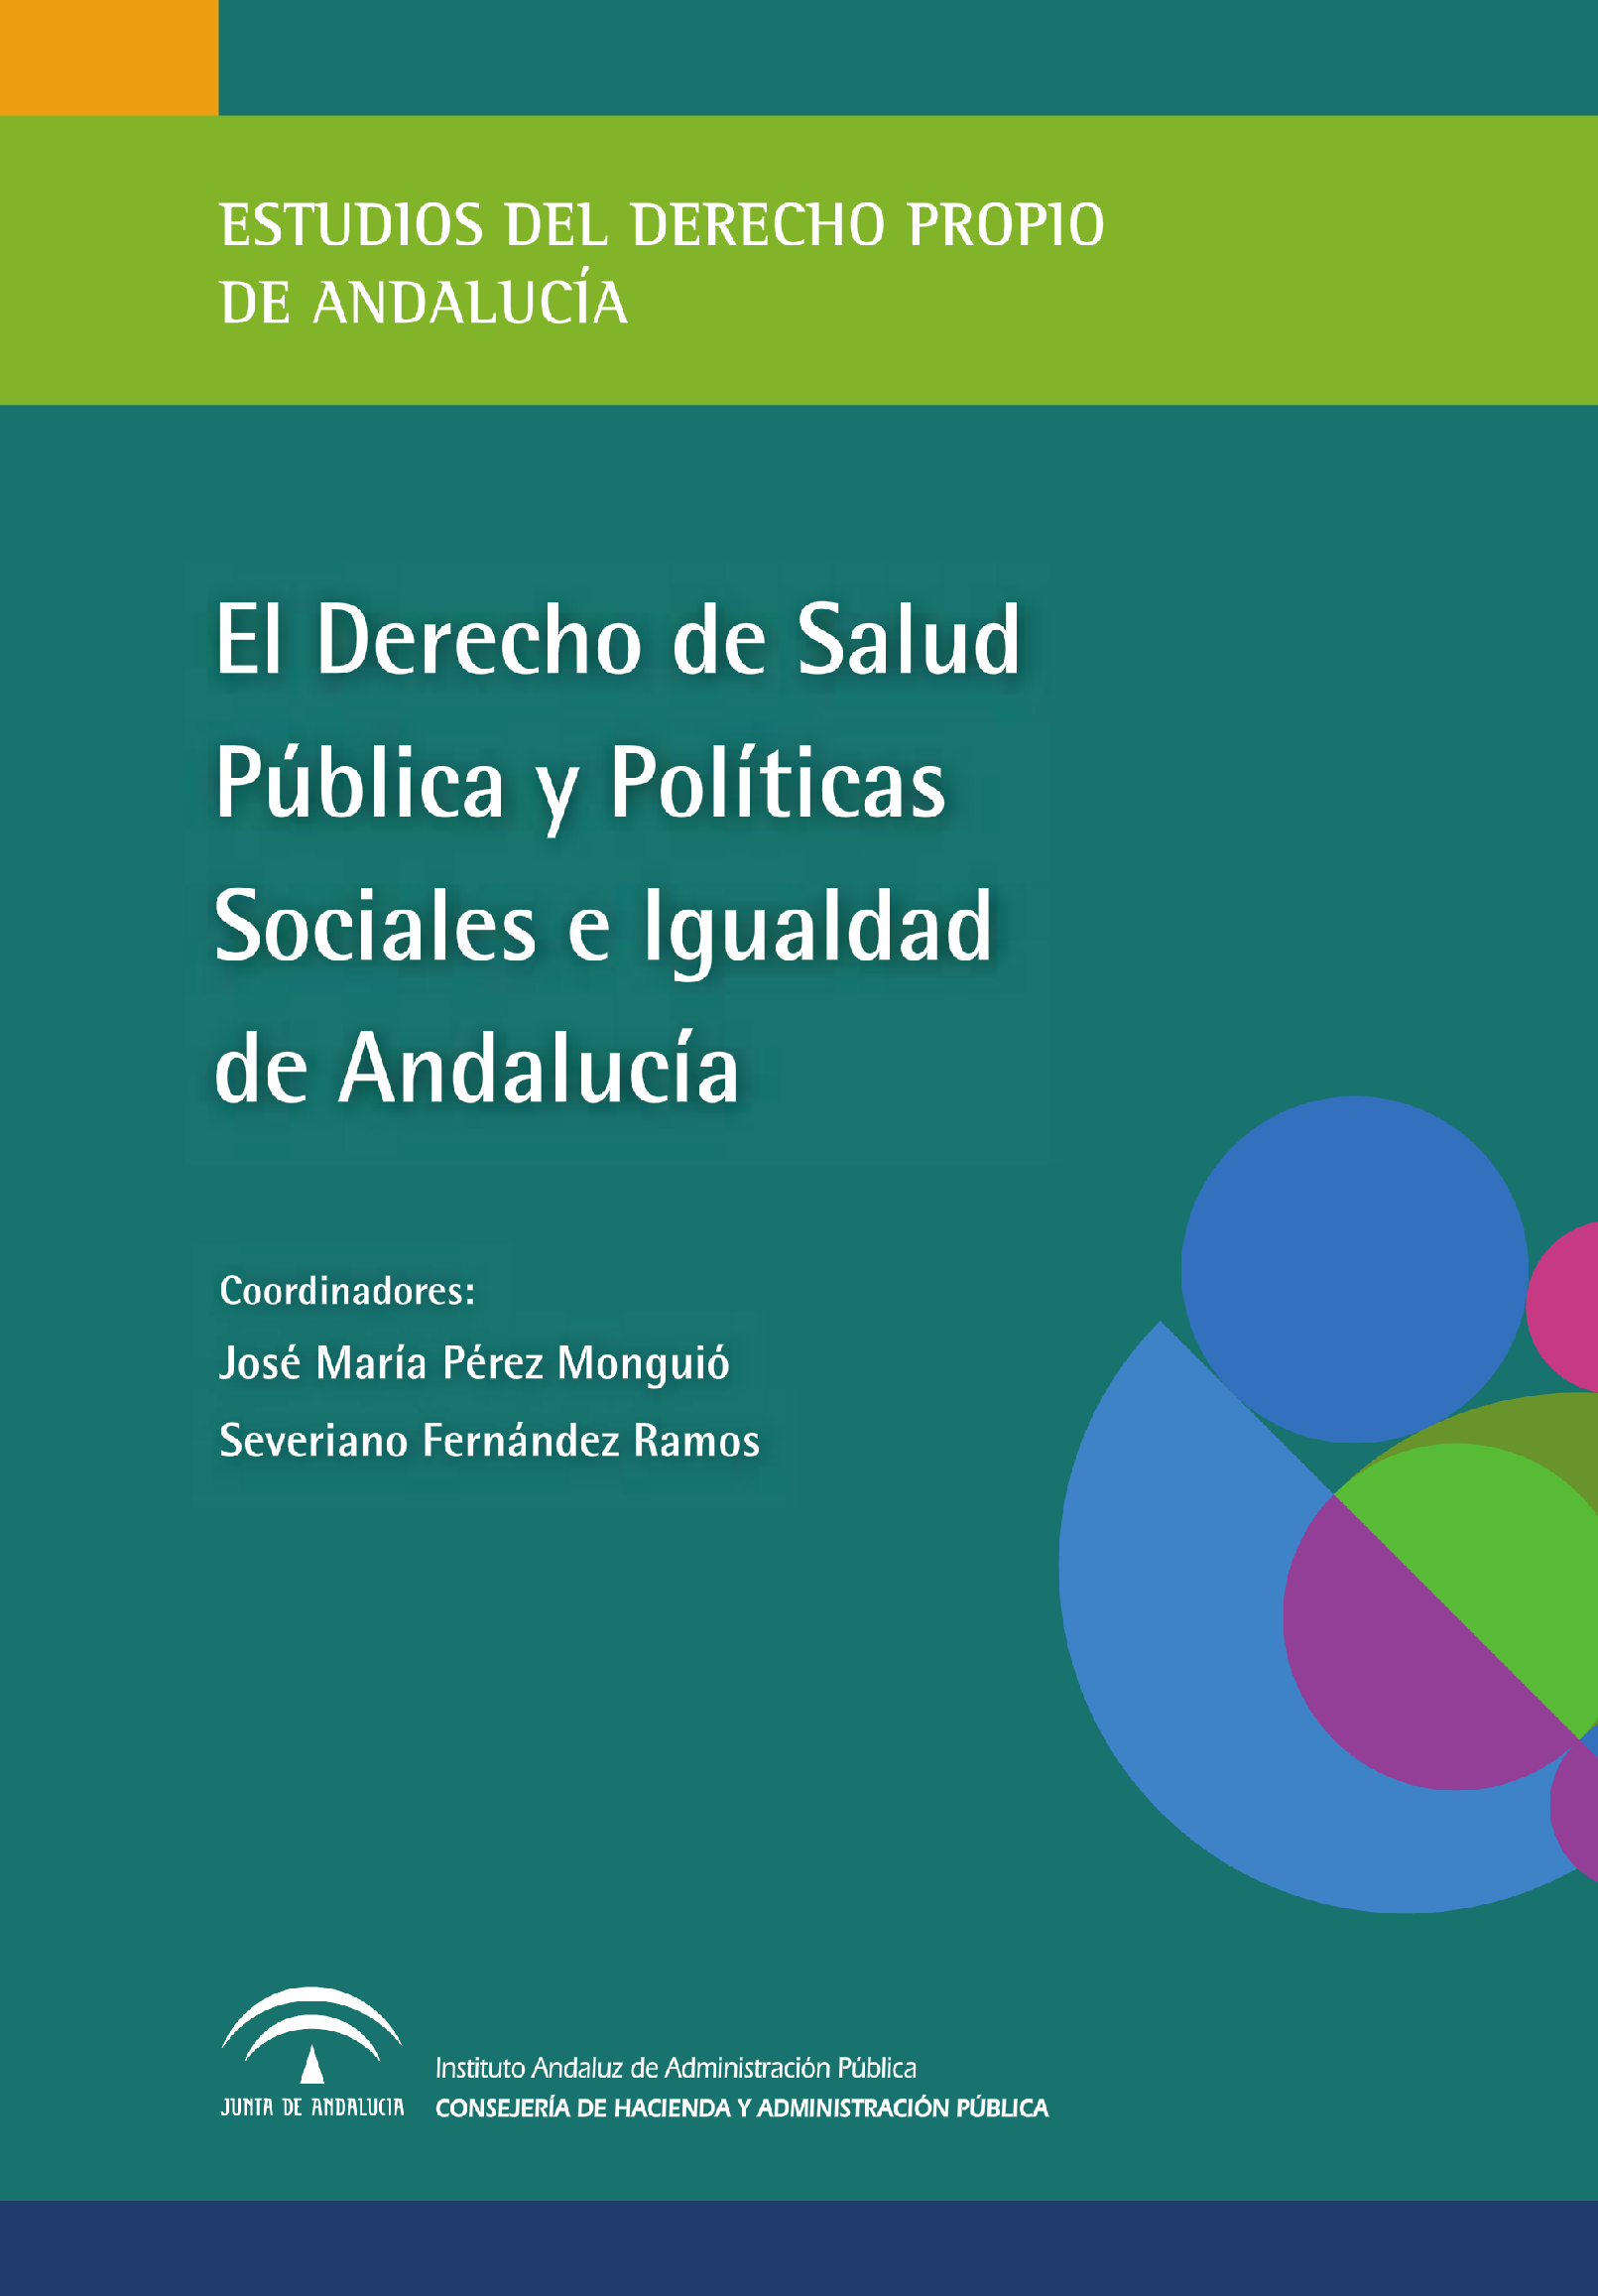 Portada de la publicación "El Derecho de Salud Pública y Políticas Sociales e Igualdad en Andalucía"